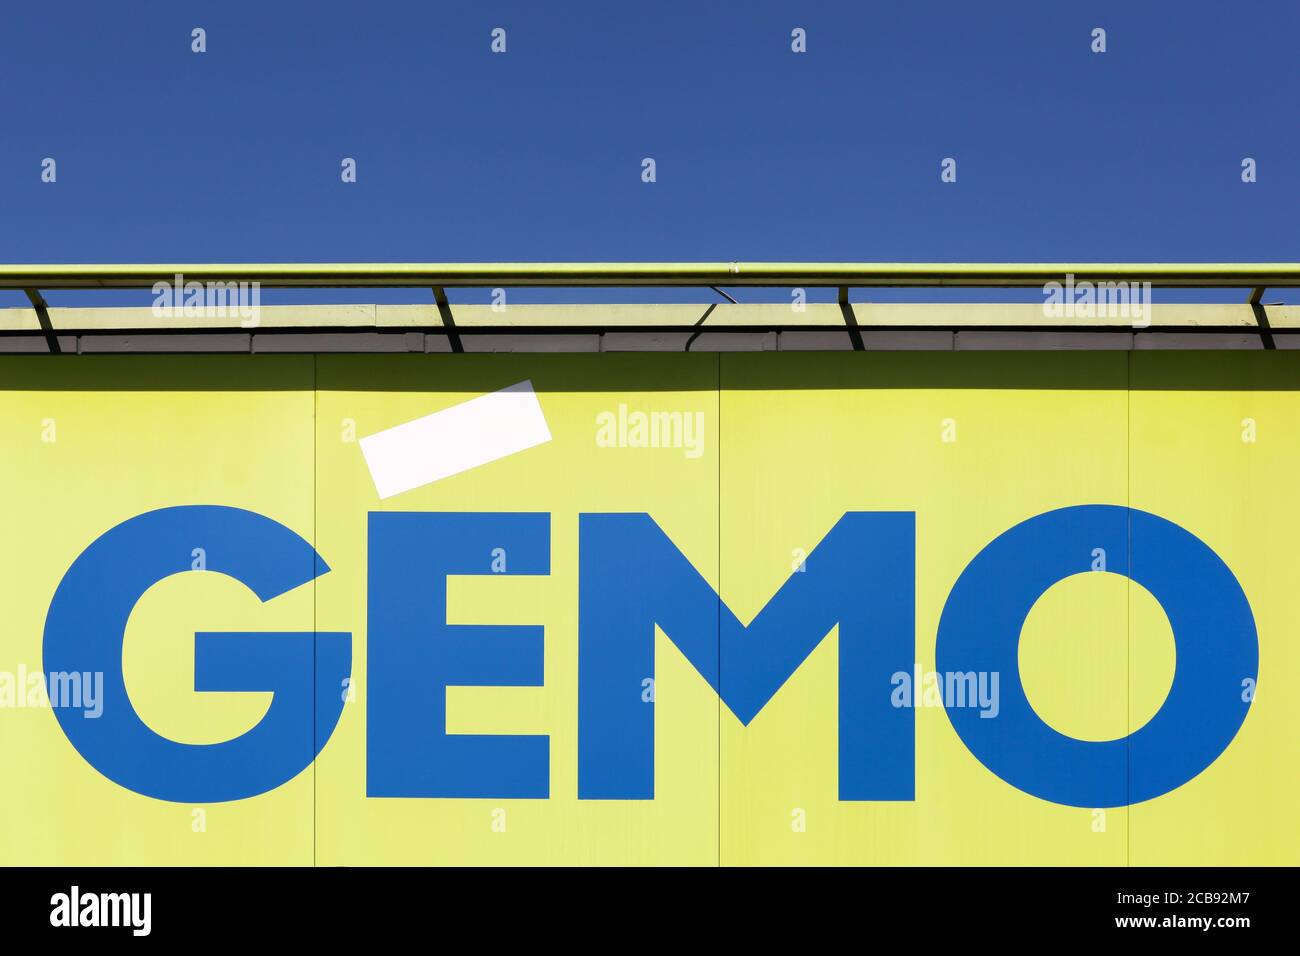 Villefranche, Frankreich - 15. März 2020: GEMO-Logo an der Wand. GEMO ist eine französische Marke für kostengünstige Schuhe und Bekleidung, die 1991 von der Eram-Gruppe gegründet wurde Stockfoto